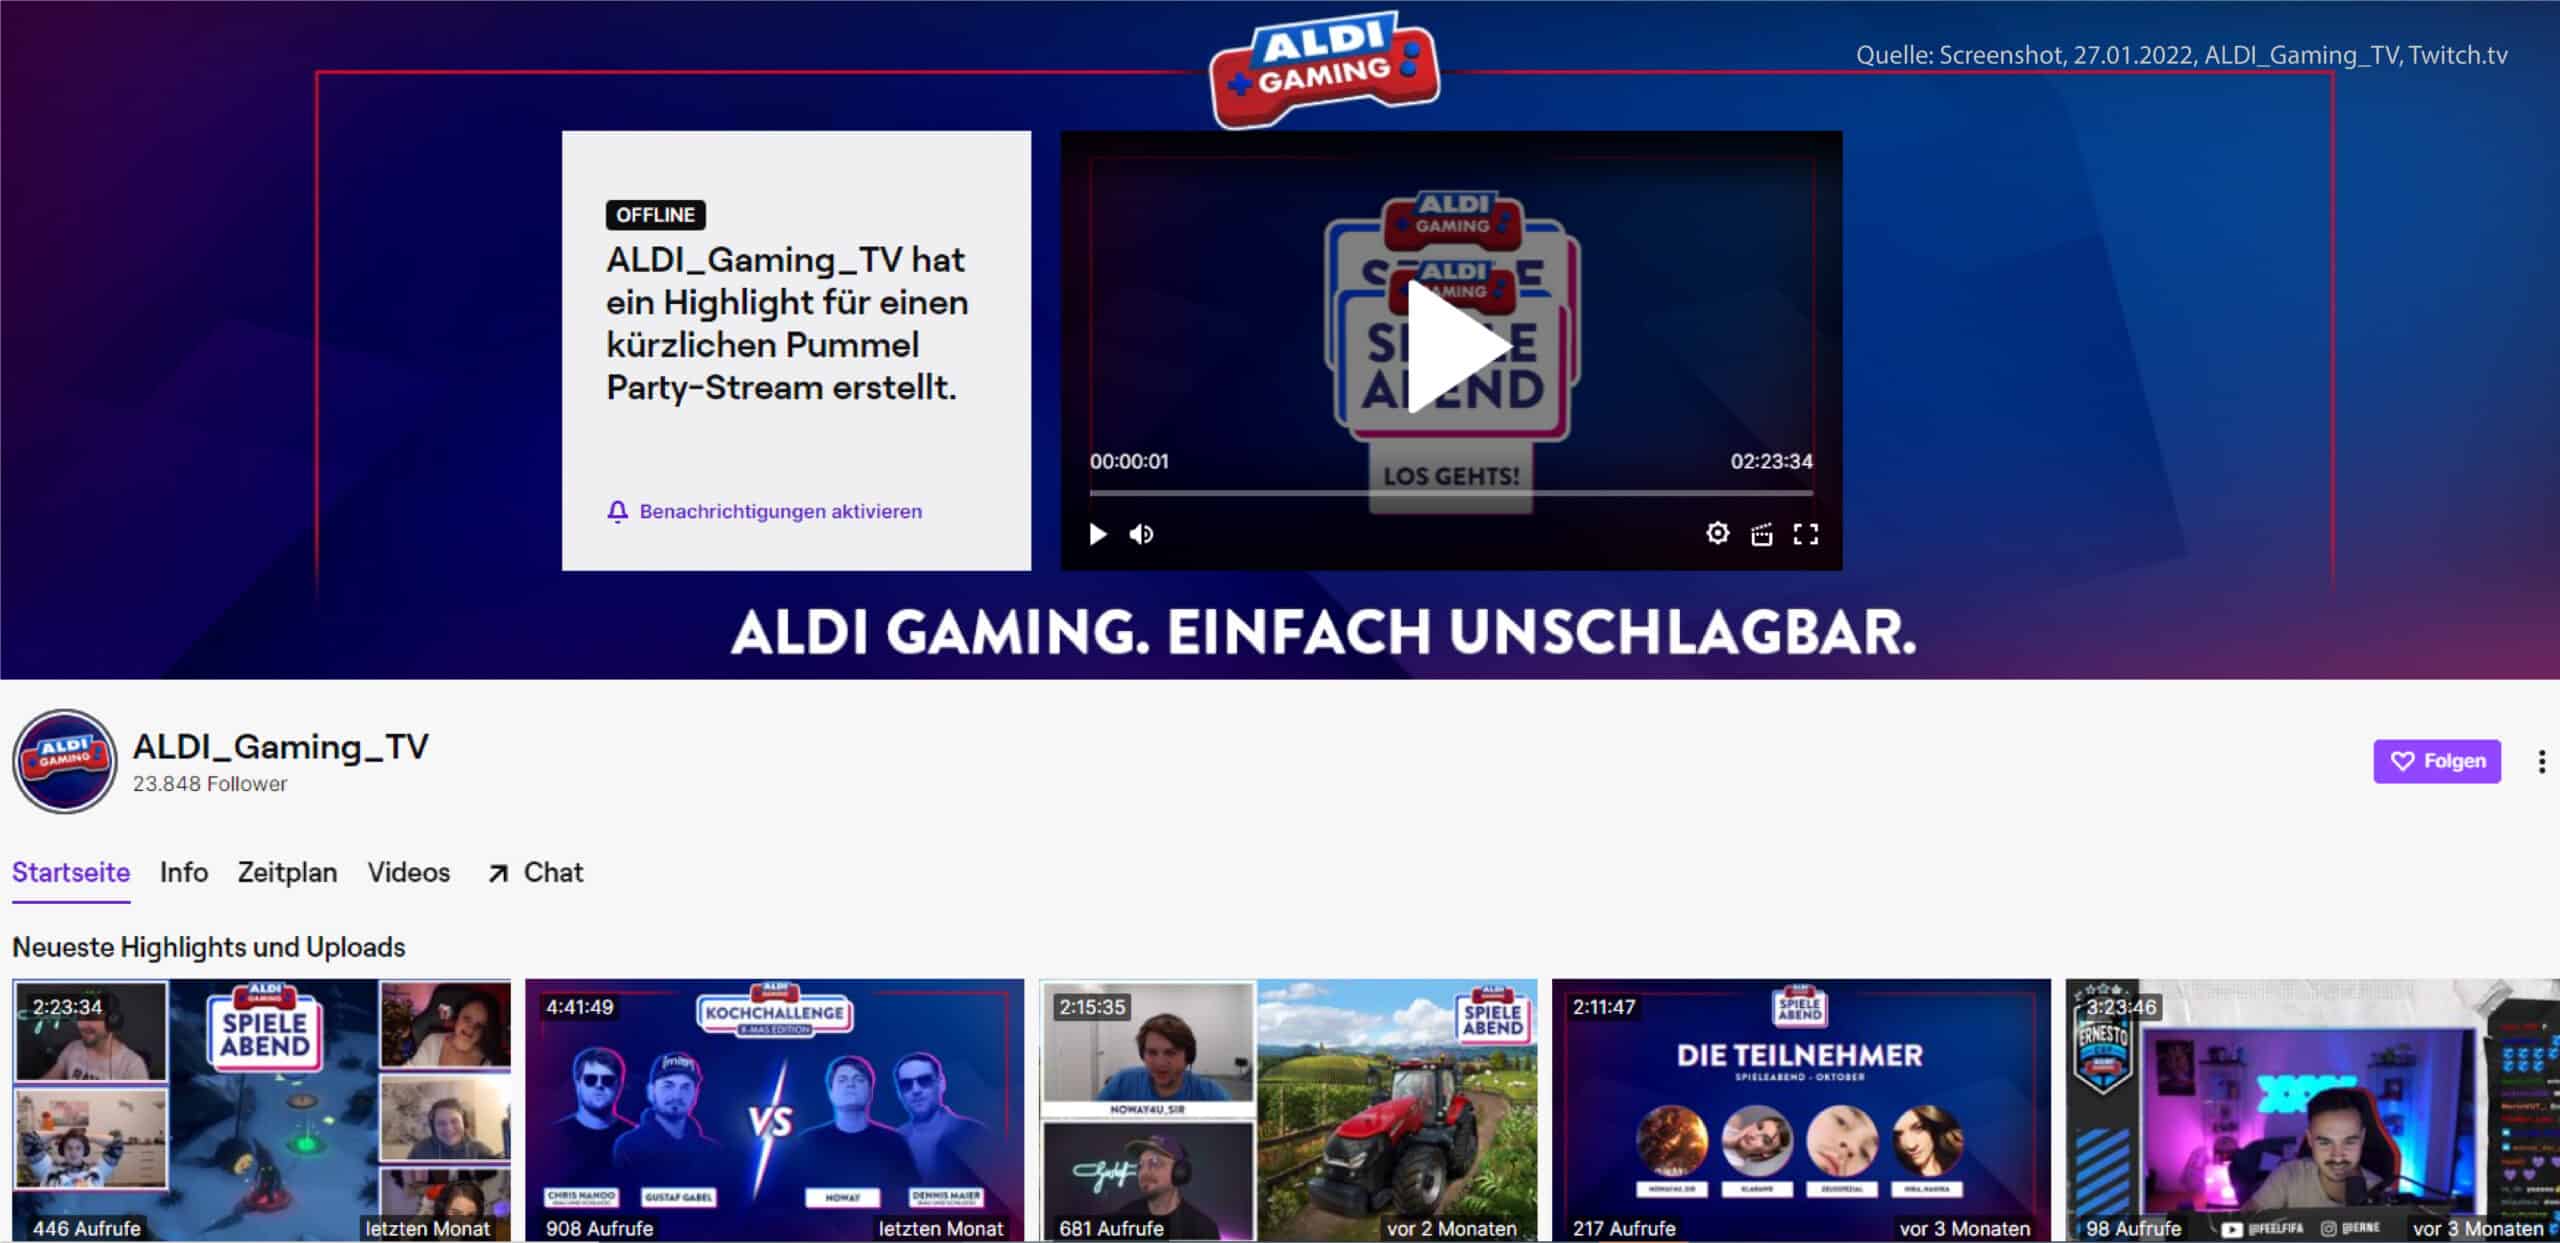 Aldi Gaming Kanal auf Twitch